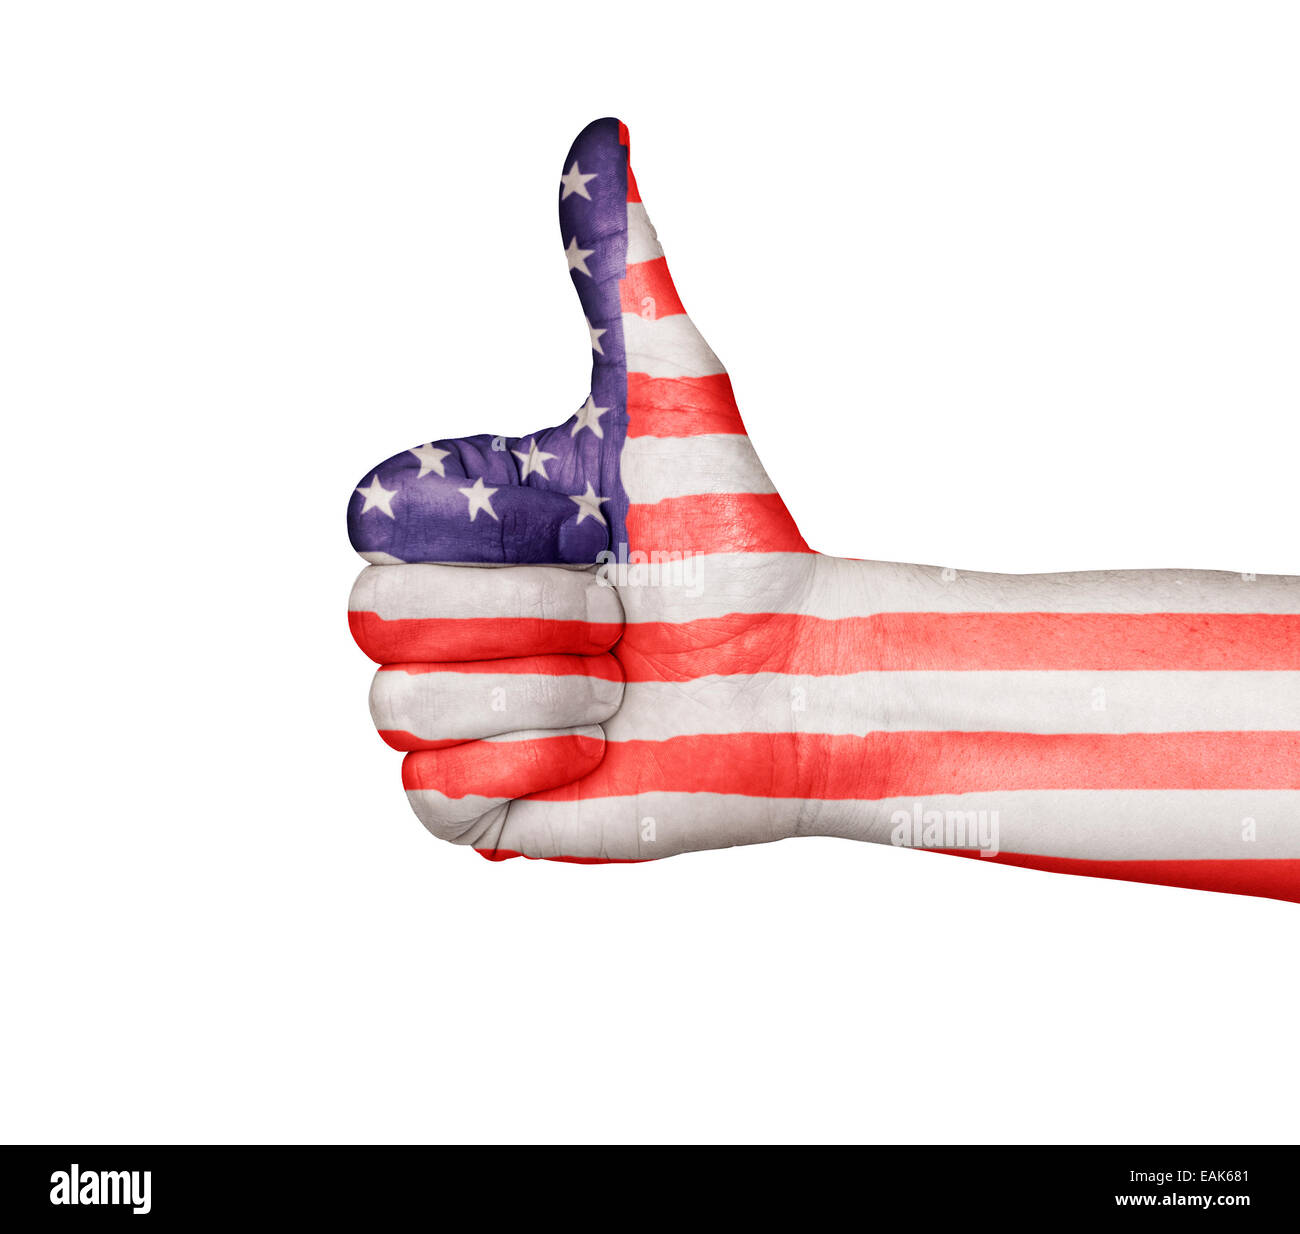 La main des hommes un coup de pouce d'approbation, peint avec les USA drapeau, les Stars and Stripes. Isolé sur un fond blanc avec l'interface CLI Banque D'Images